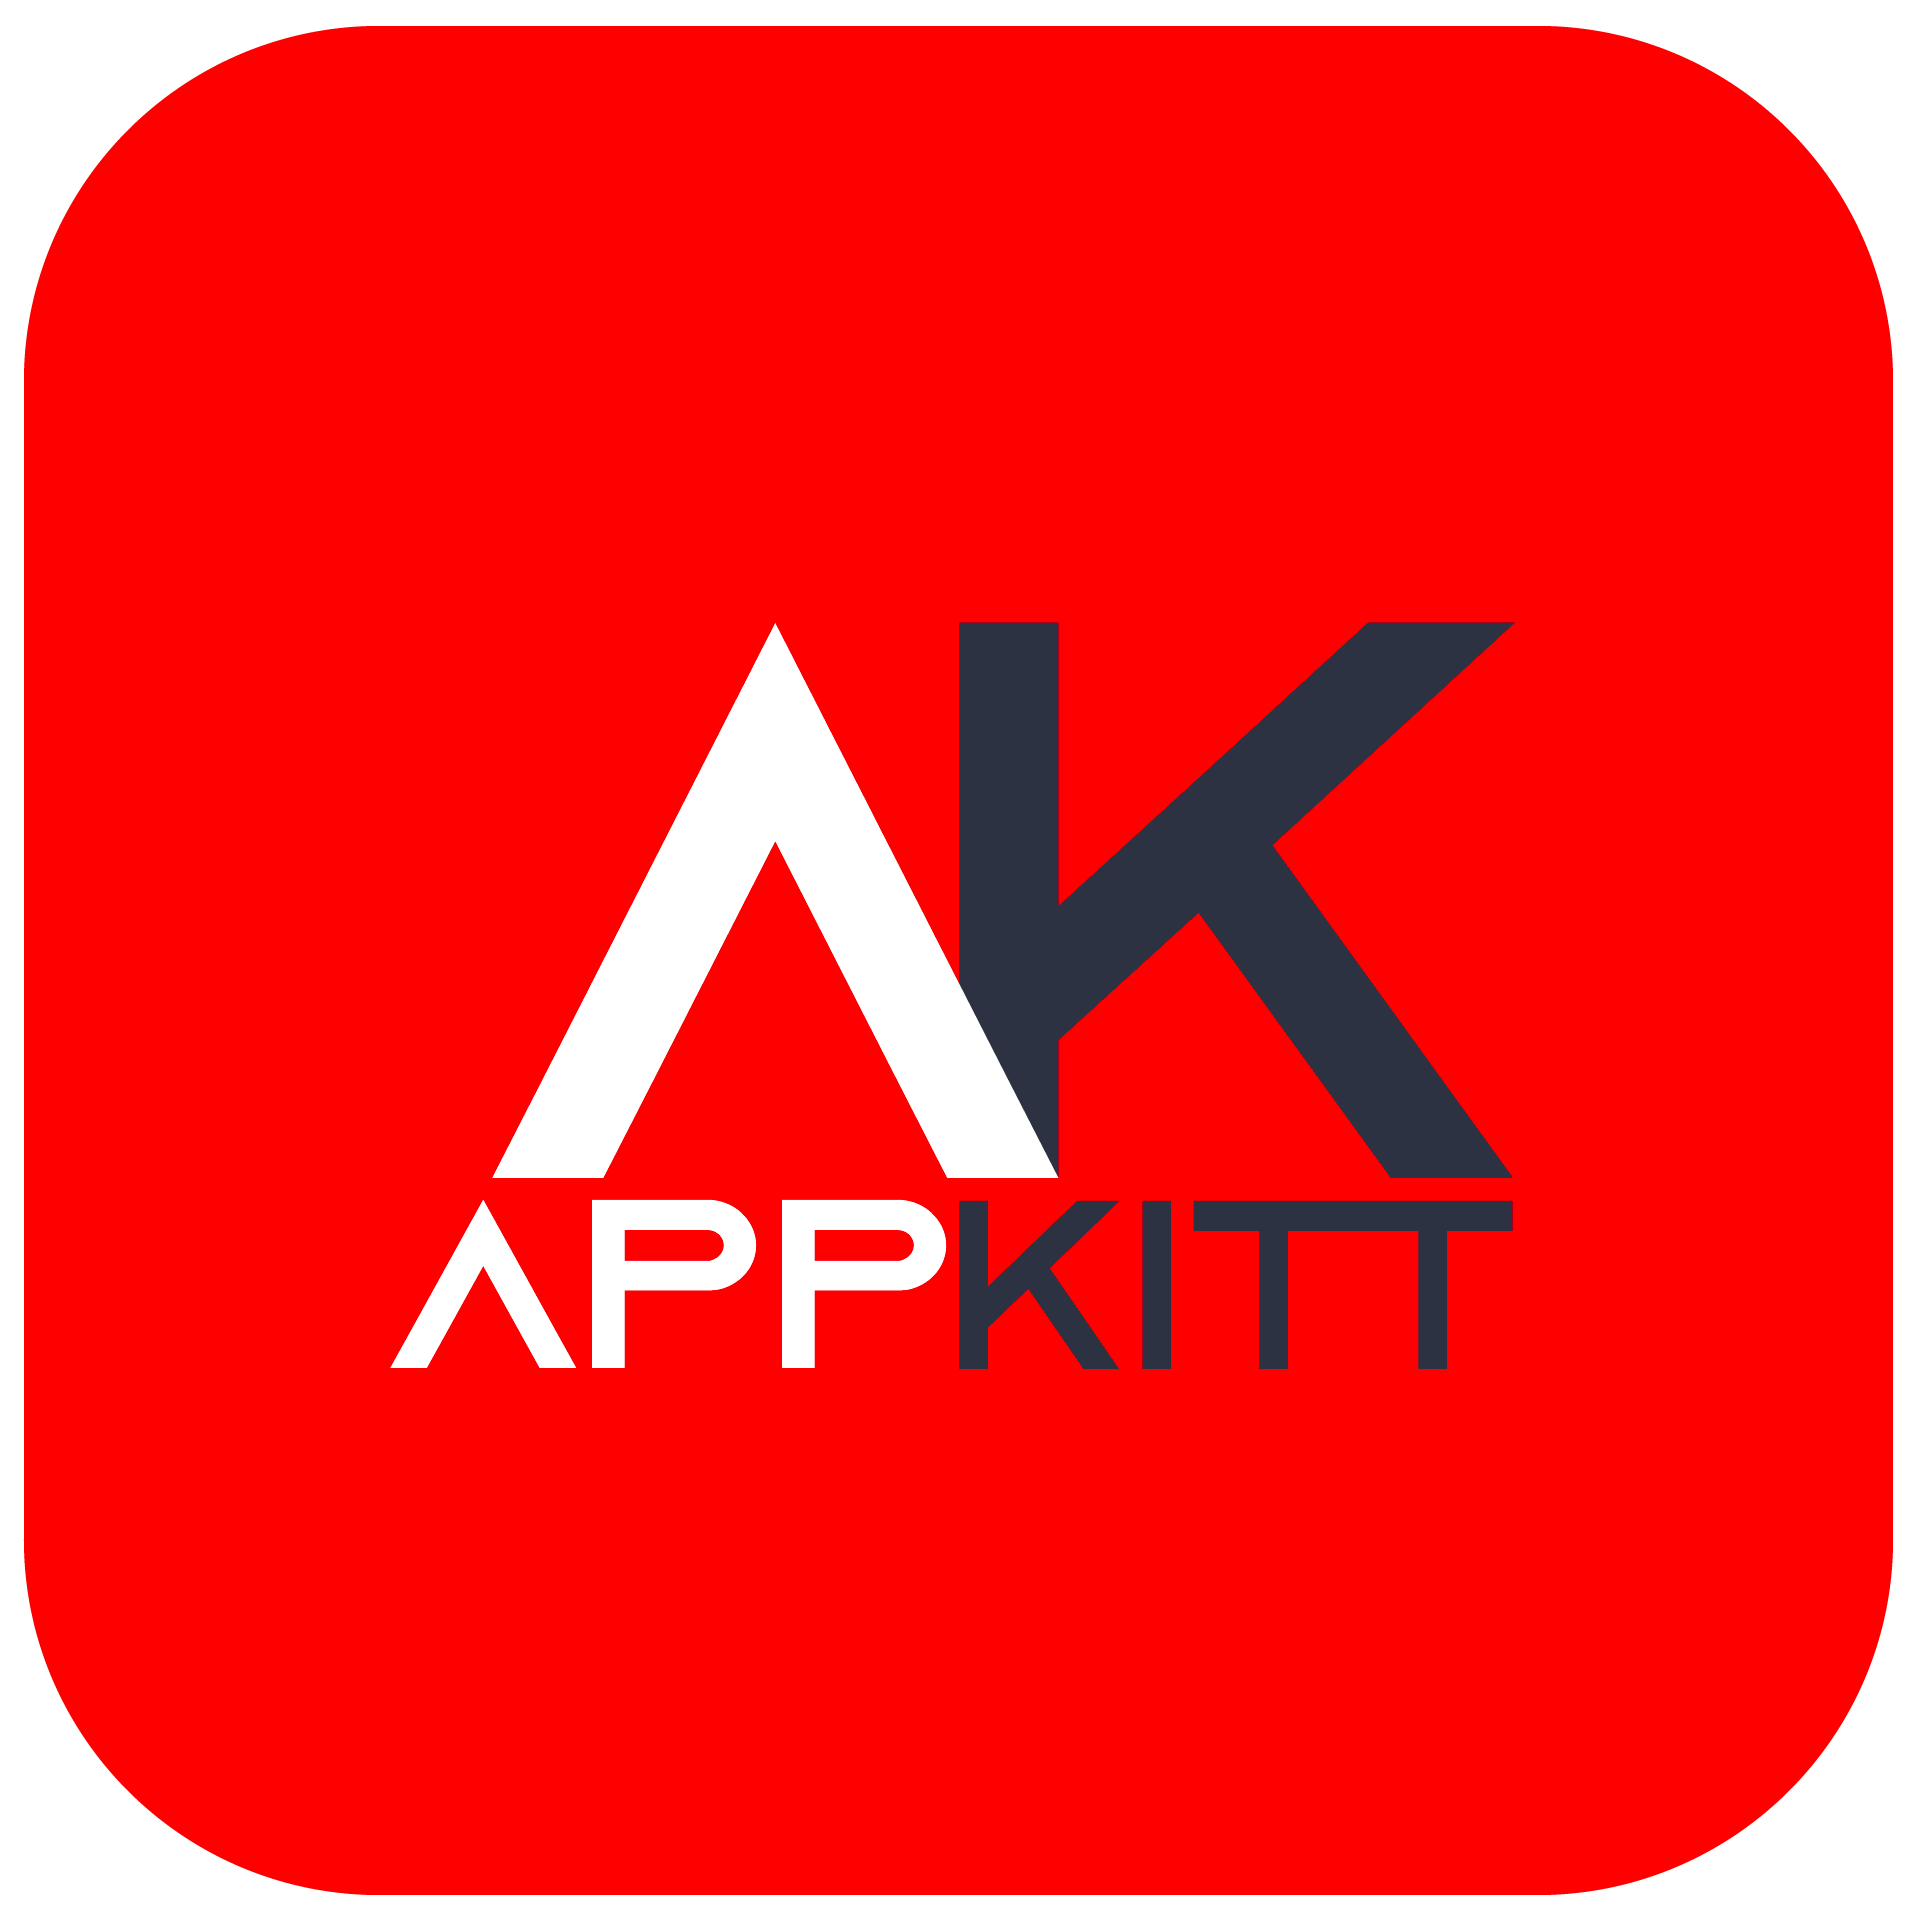 APPKITT-App-Icon-Logo-Master.png